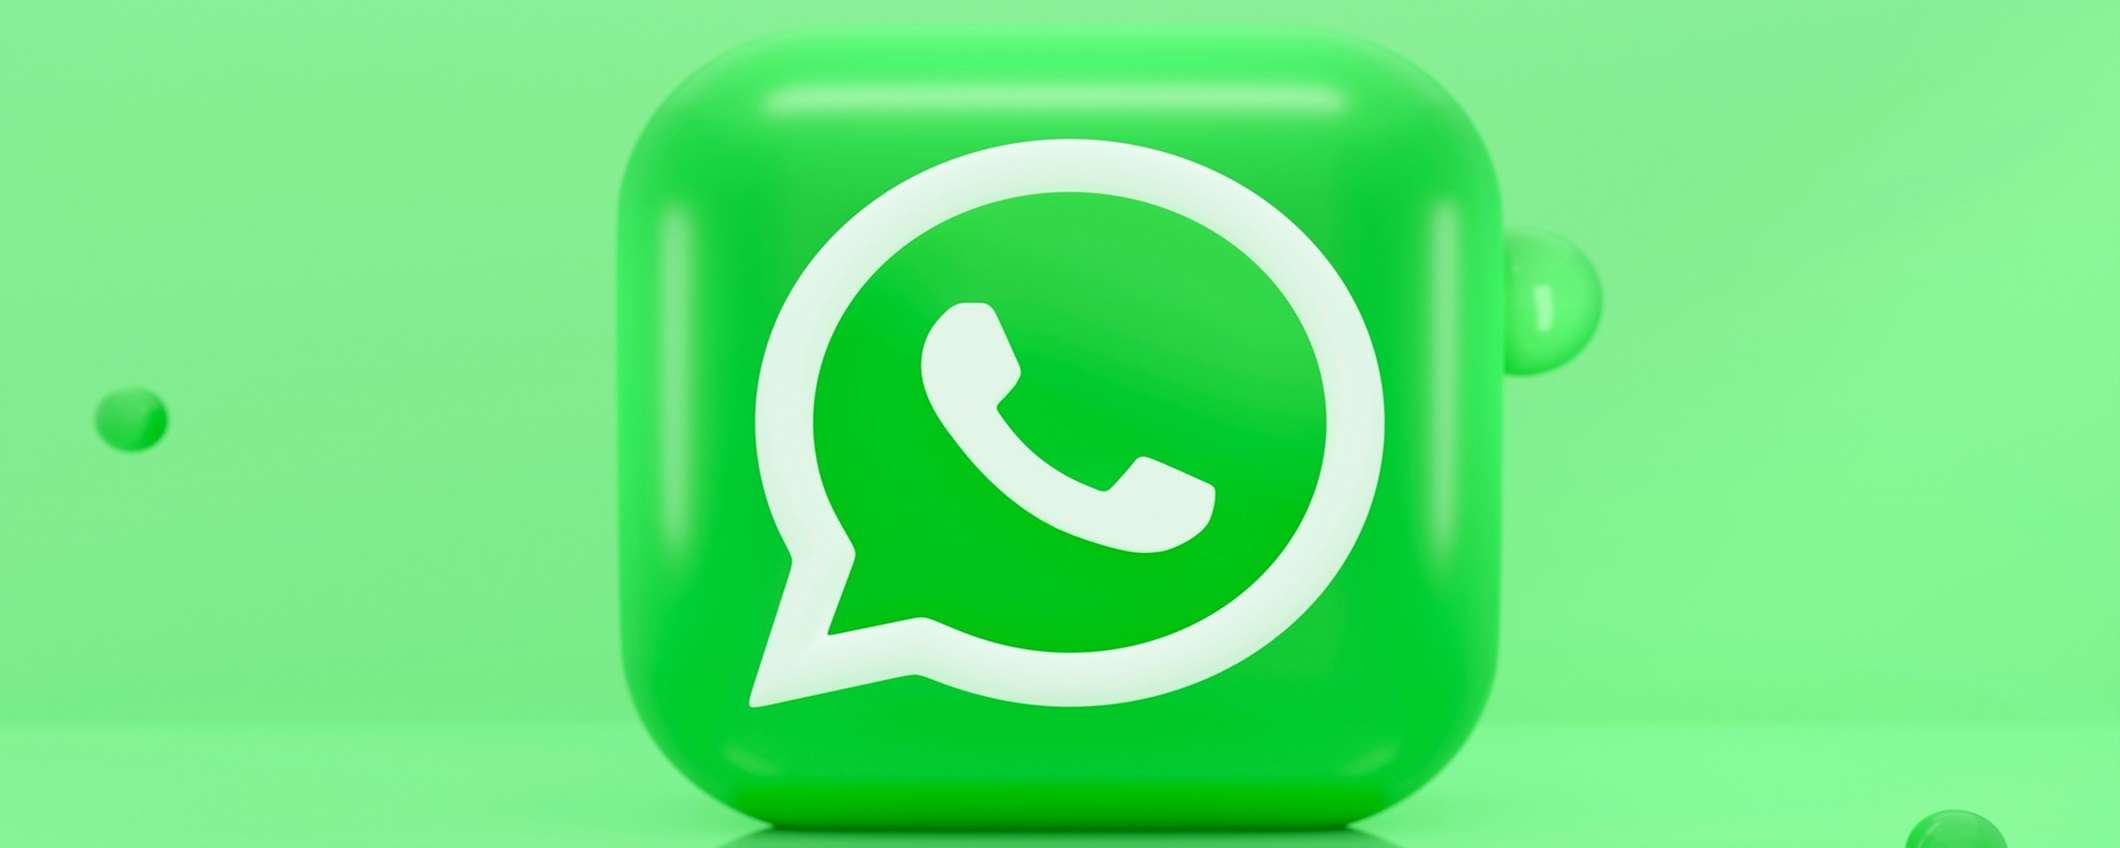 Come fissare un messaggio su Whatsapp